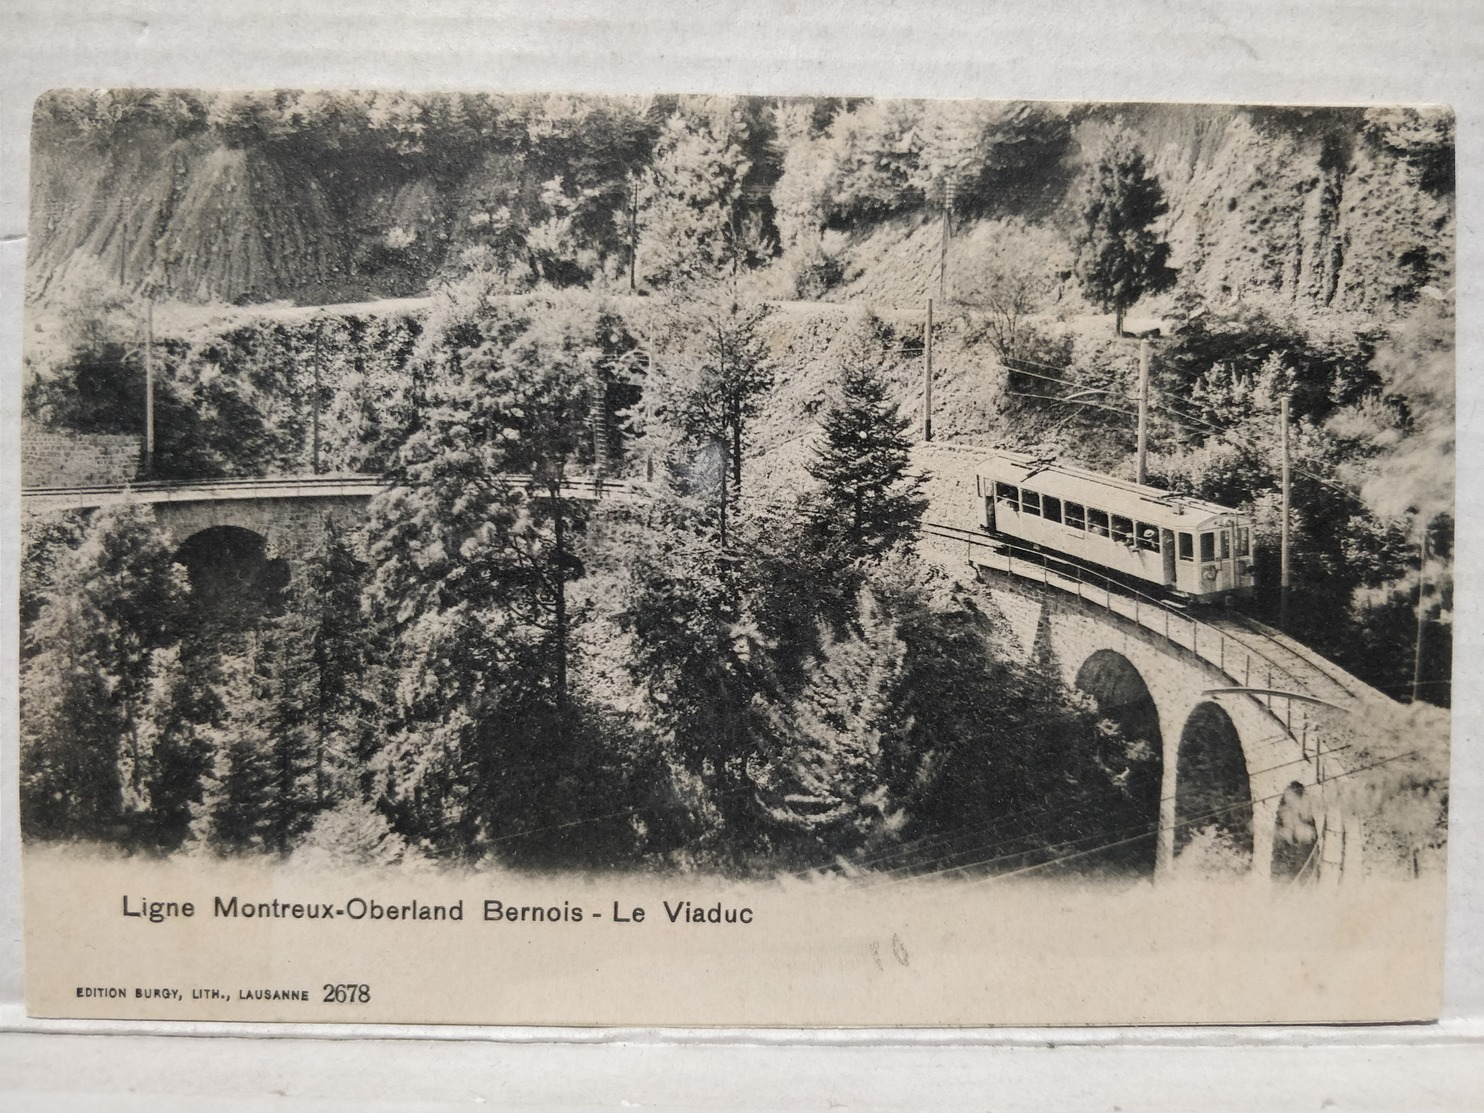 Ligne Montreux Oberland Bernois. Le Viaduc - Berne